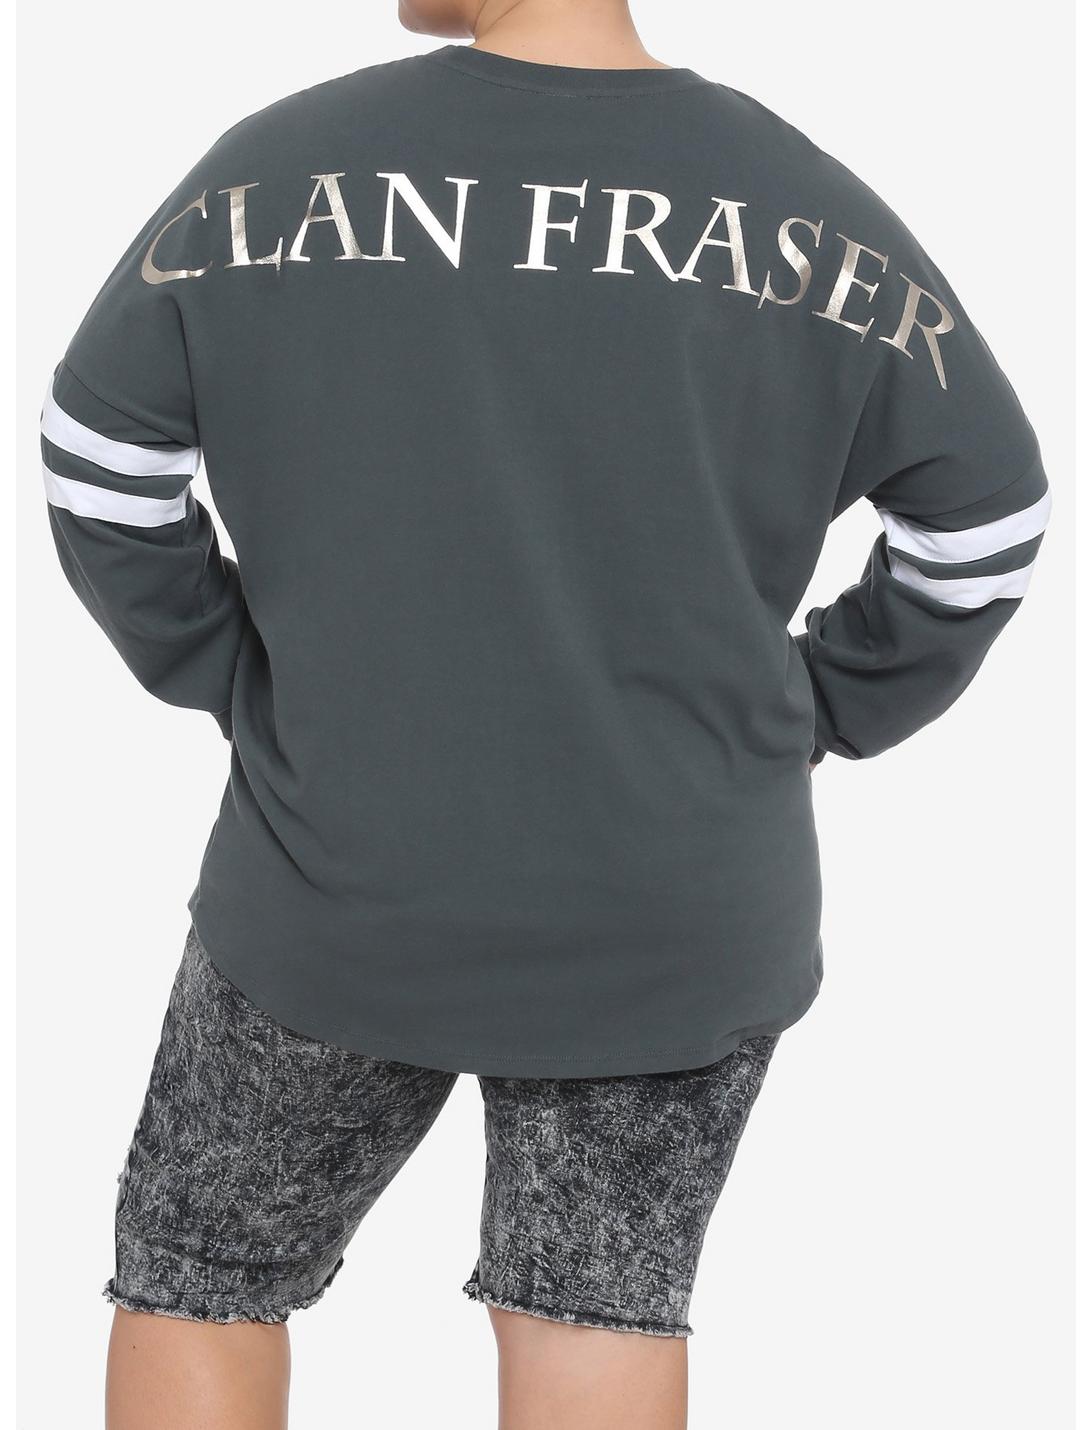 Outlander Clan Fraser Girls Athletic Jersey Plus Size, MULTI, hi-res